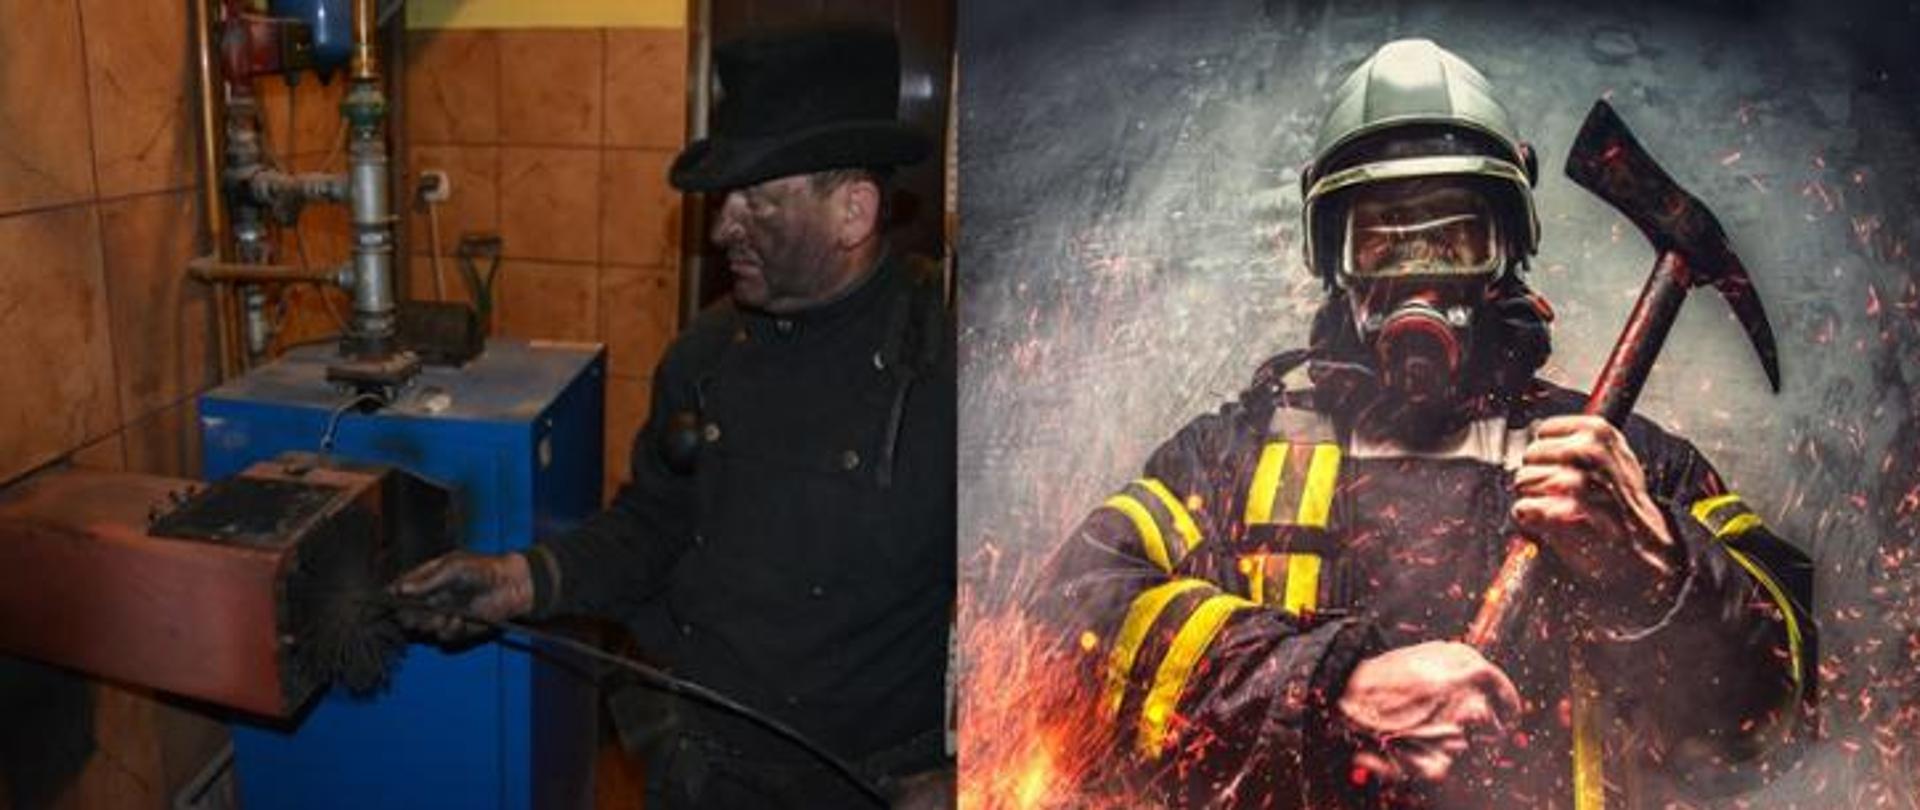 Na zdjęciu strażak i kominiarz. Zdjęcie wykonane na potrzeby akcji prewencyjnej dotyczącej pożarów sadzy w kominie. 